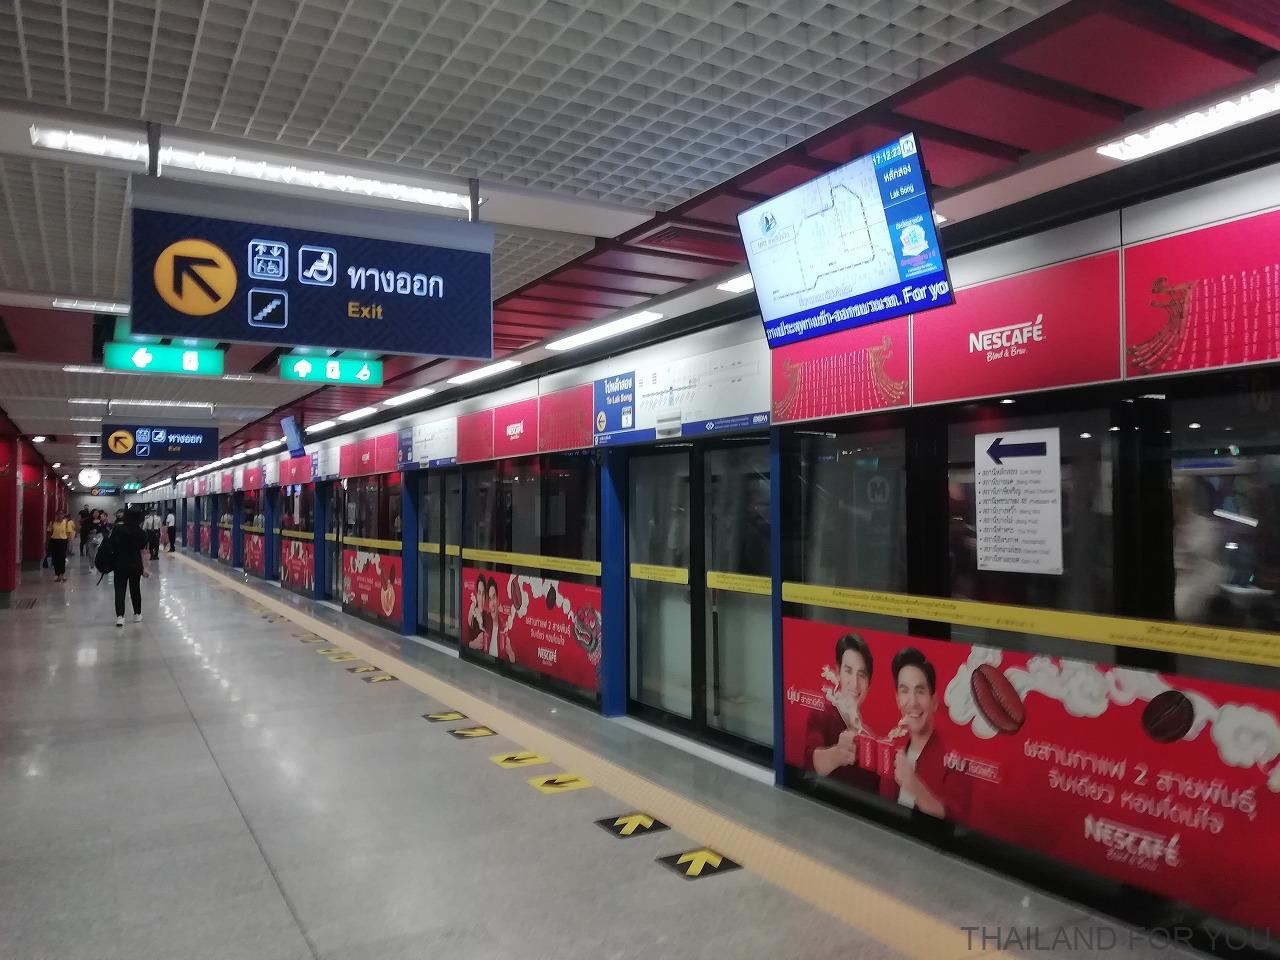 ワットマンコン駅 Wat Mangkon バンコク MRT 延伸